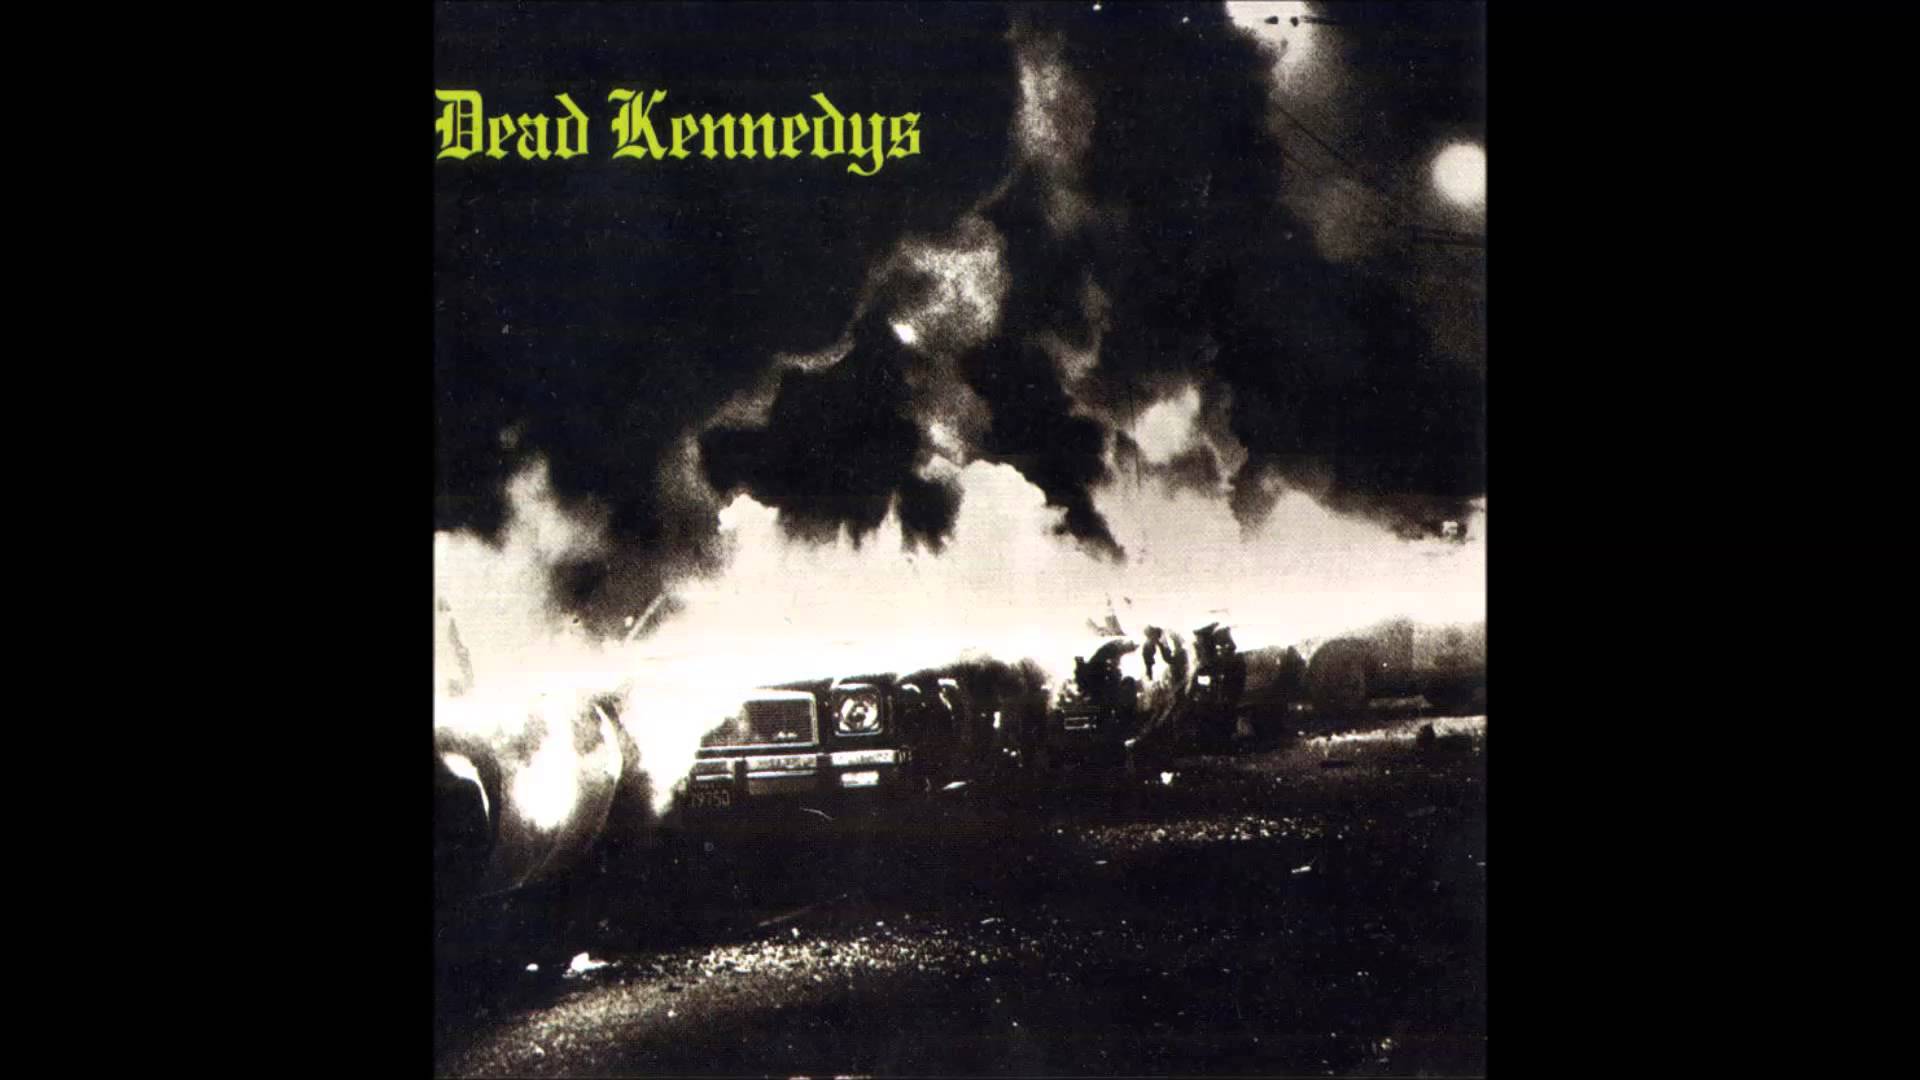 Dead Kennedys - Fresh Fruit For Rotting Vegetables Full Album